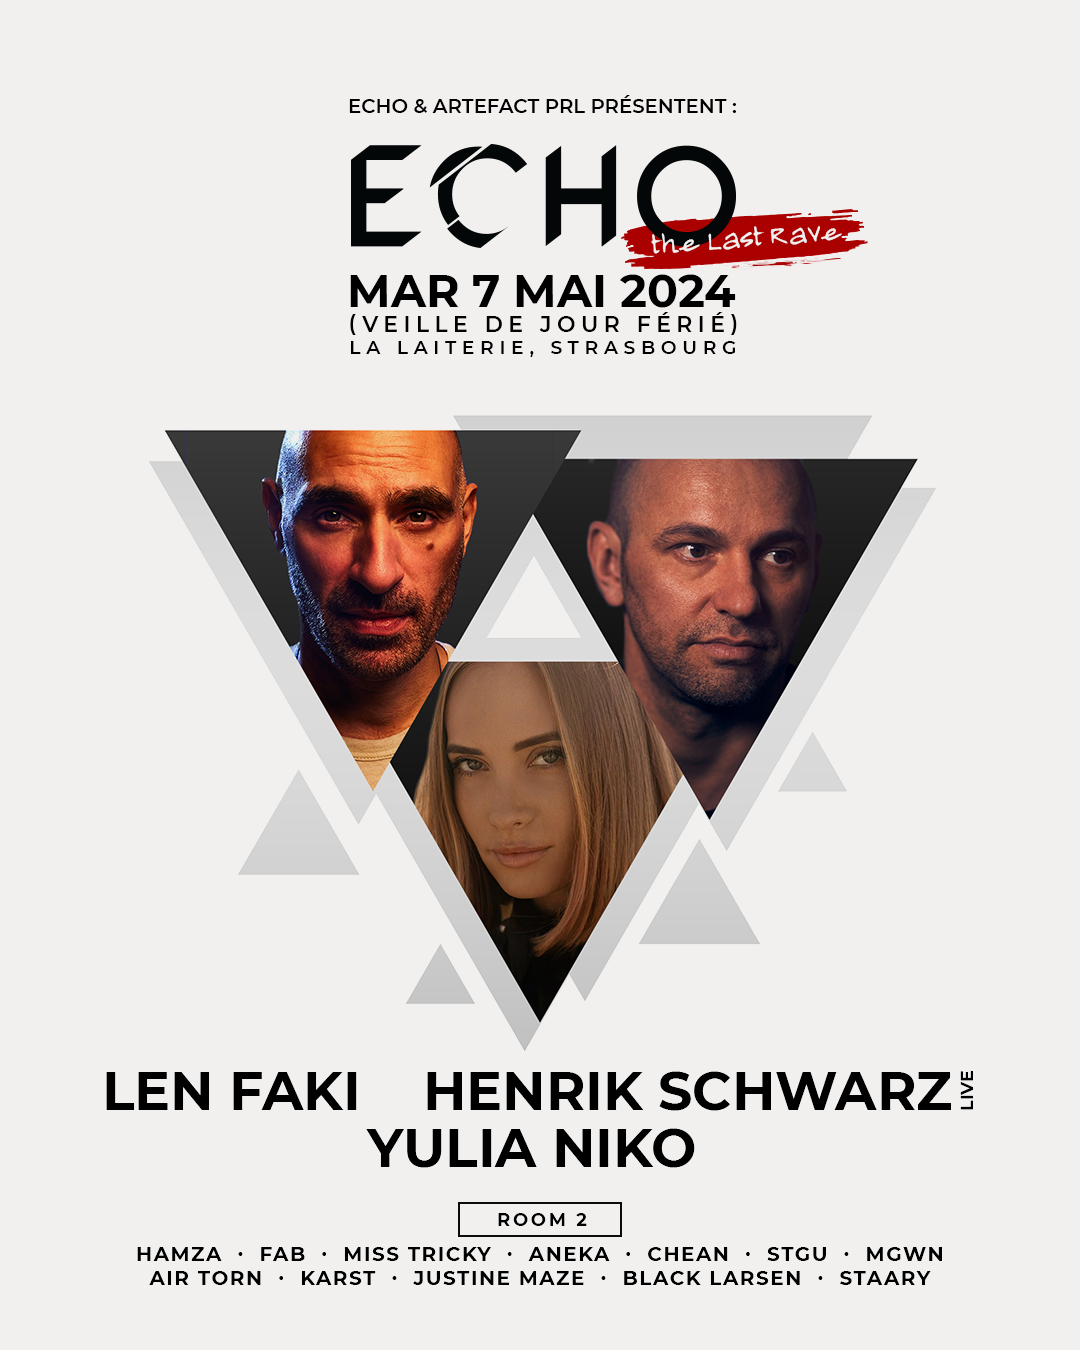 ECHO with Len Faki, Henrik Schwarz, Yulia Niko - フライヤー表